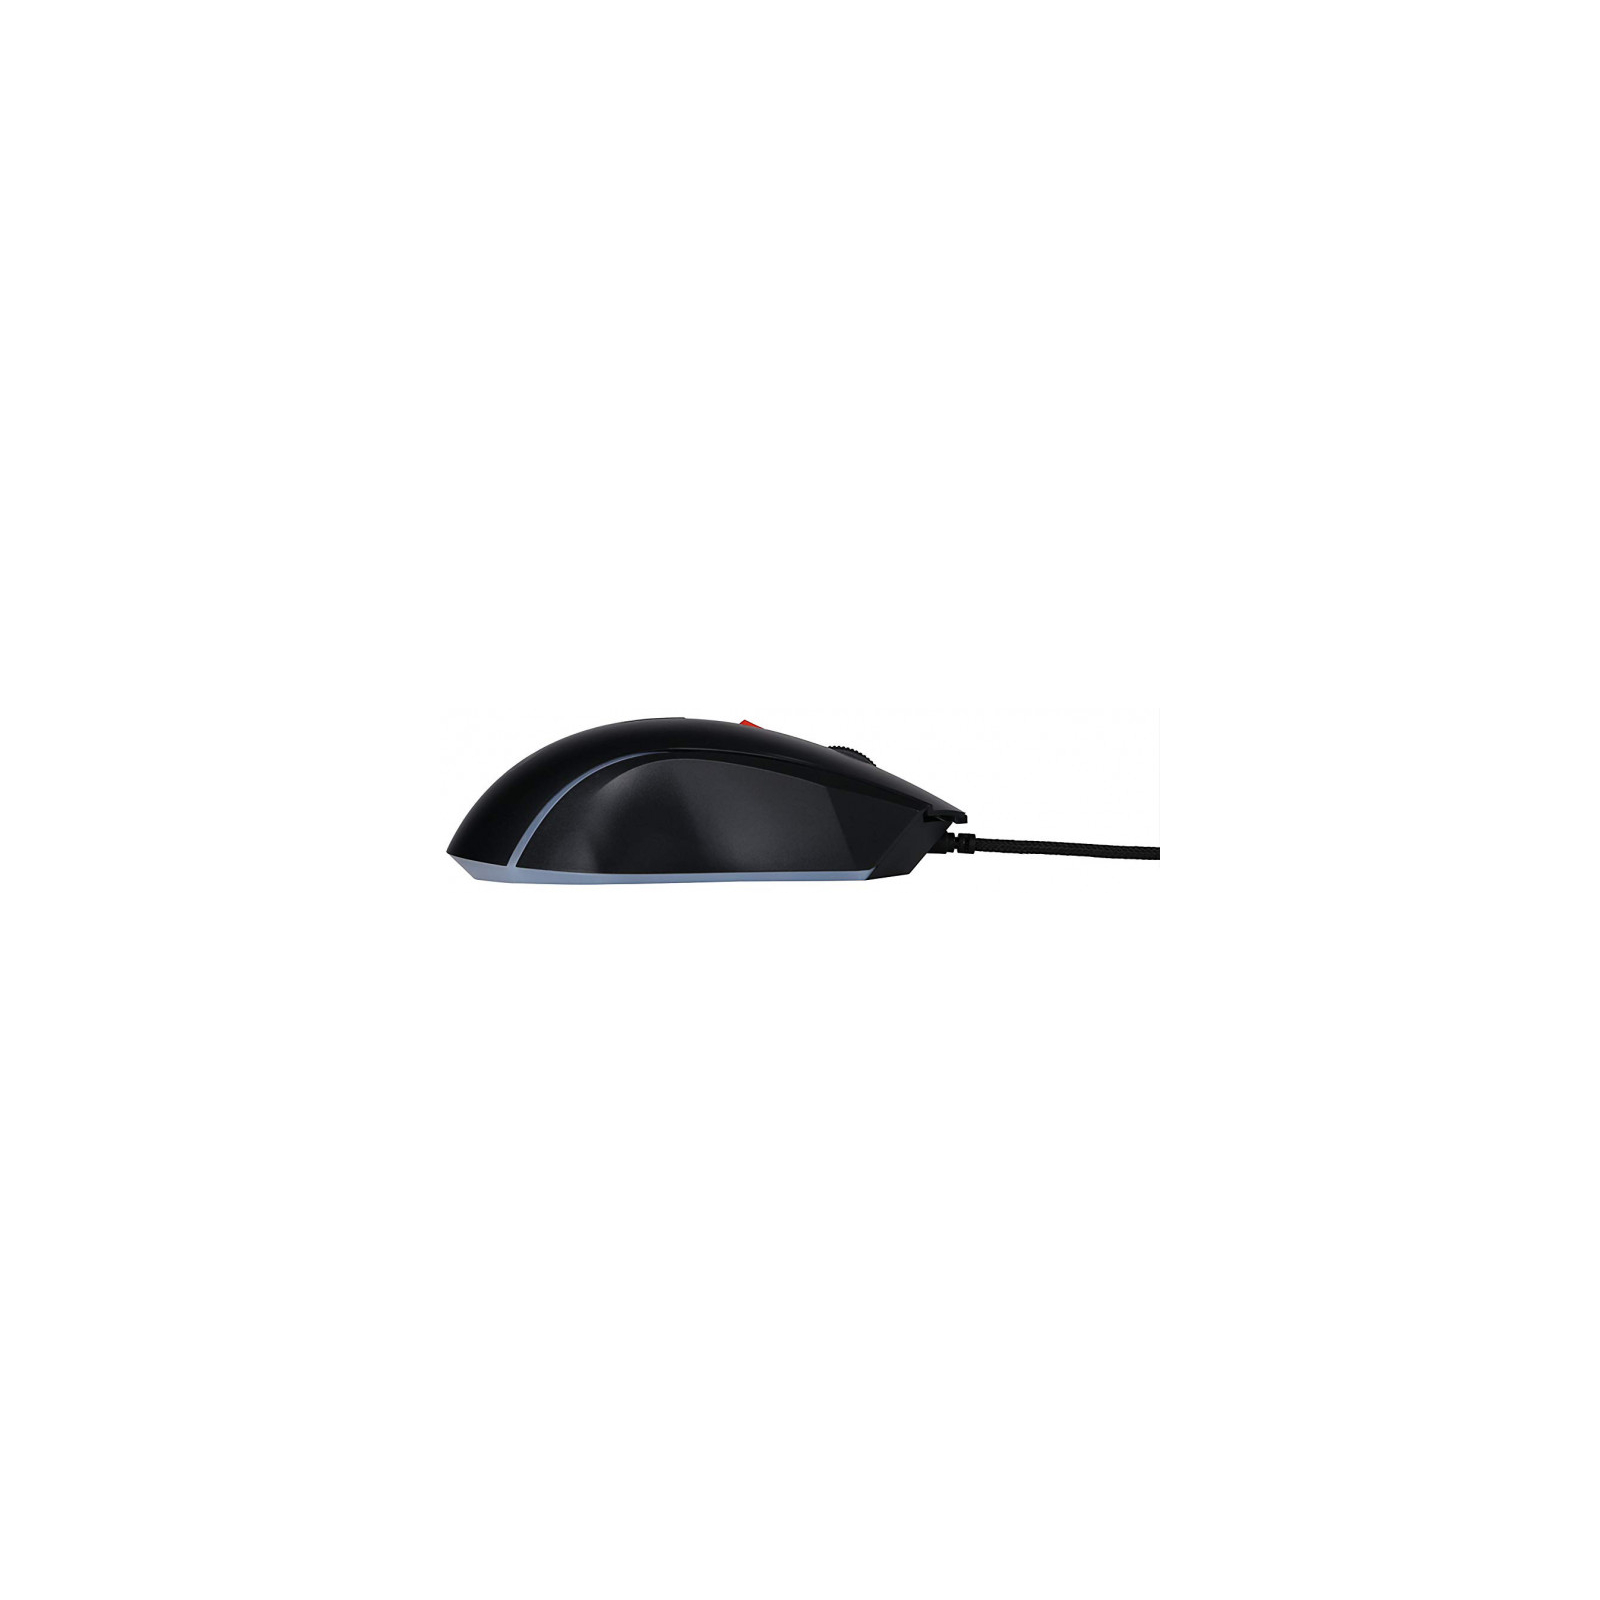 Мышка Marvo G930 USB Black (G930) изображение 3